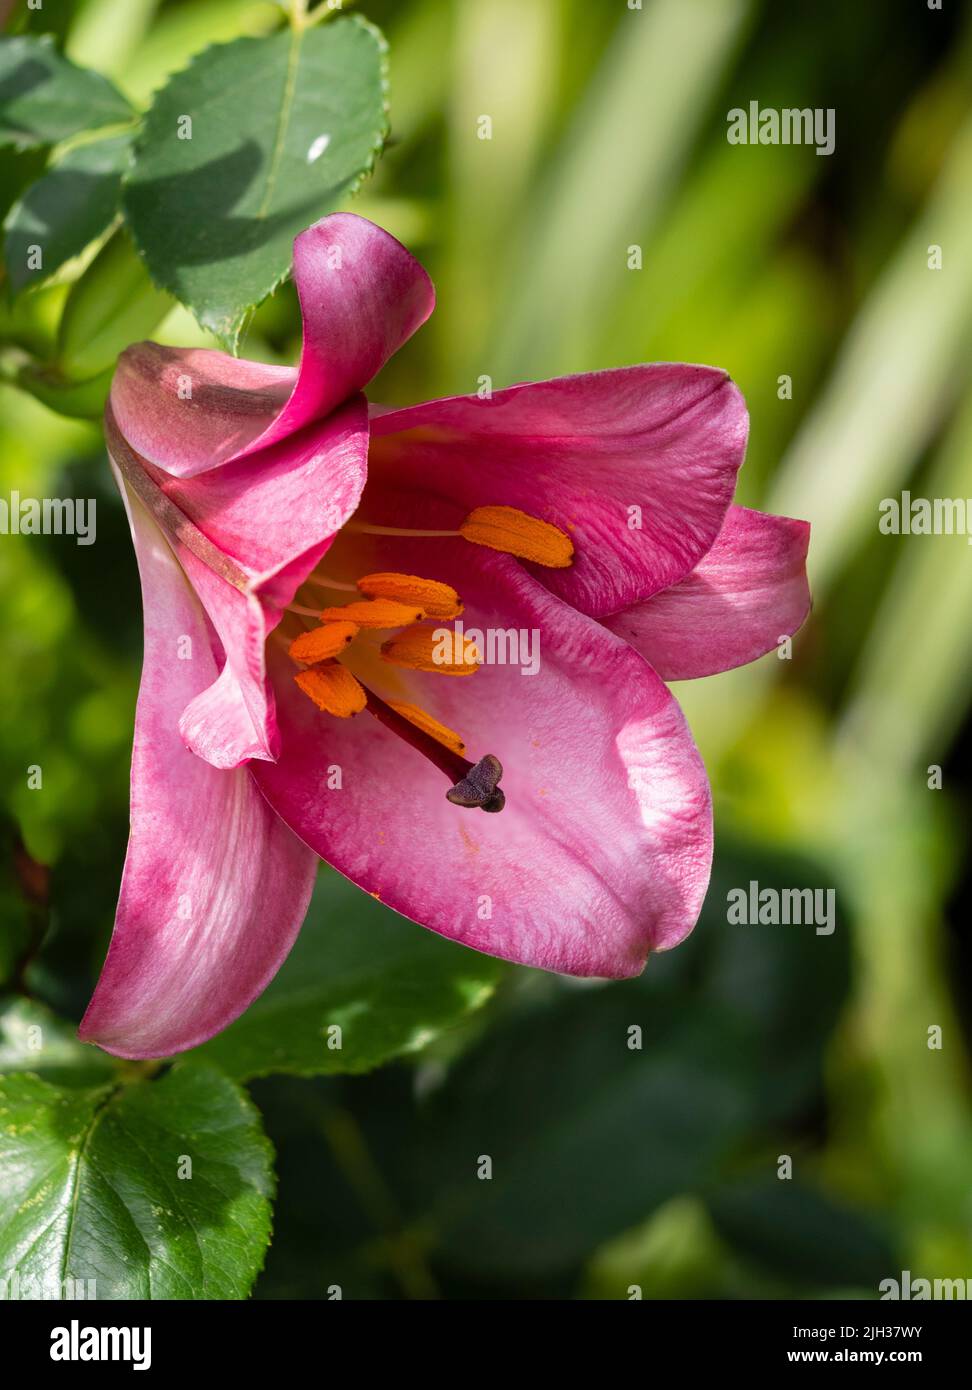 Gros plan de la fleur estivale de la nénuphar robuste de la trompette, Lilium 'Pink perfection' Banque D'Images